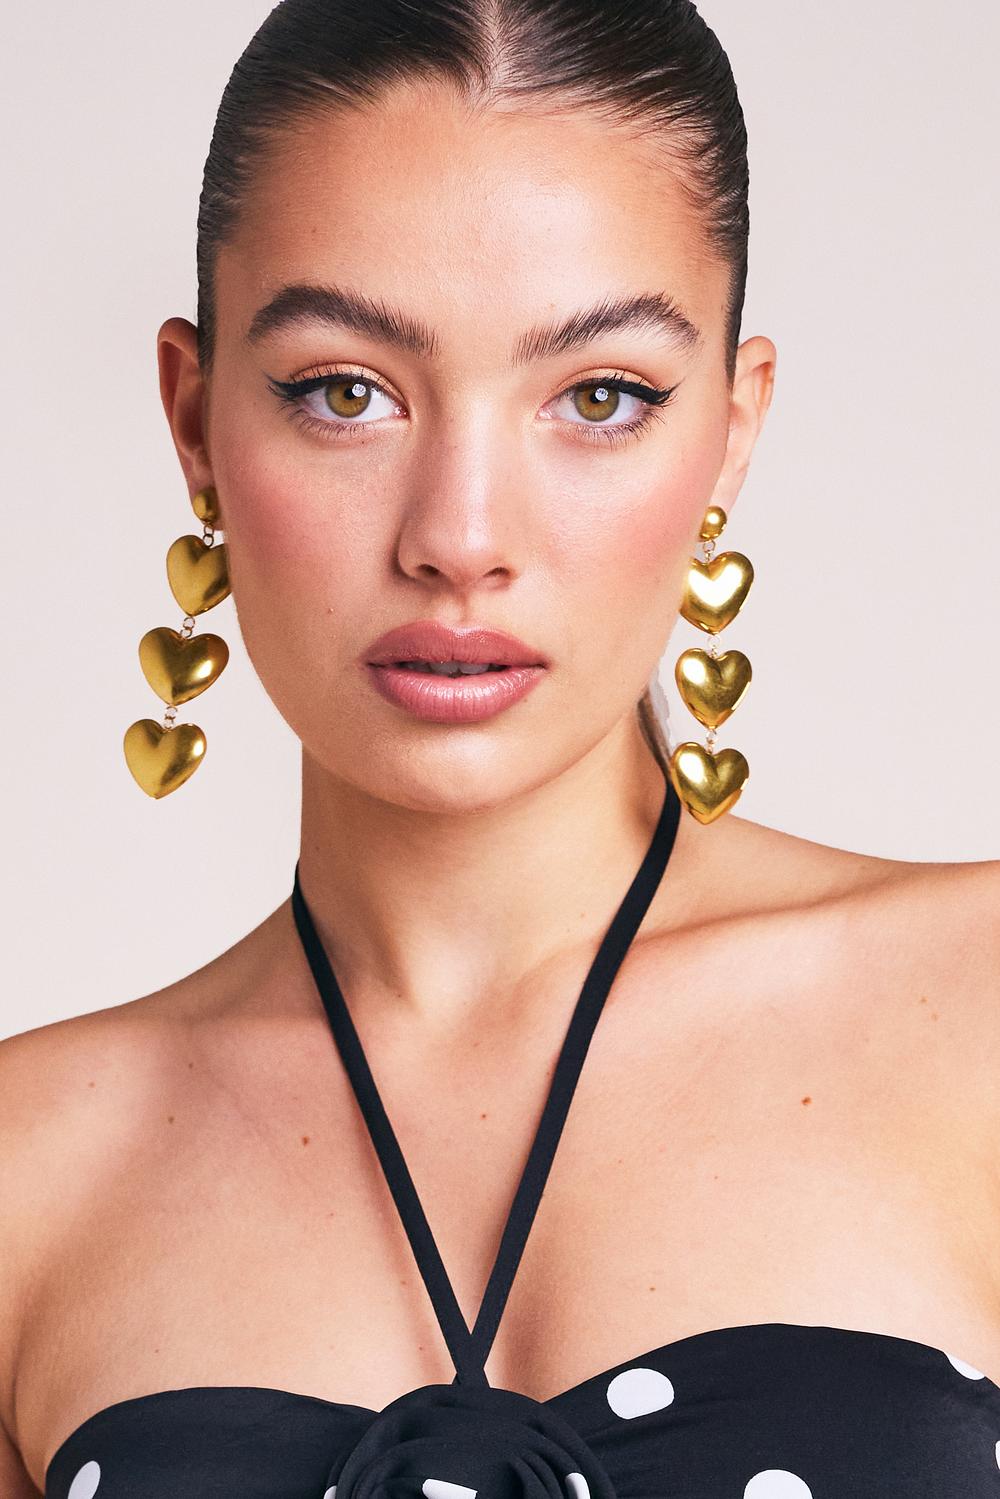 Golden earrings with heart shaped pendants